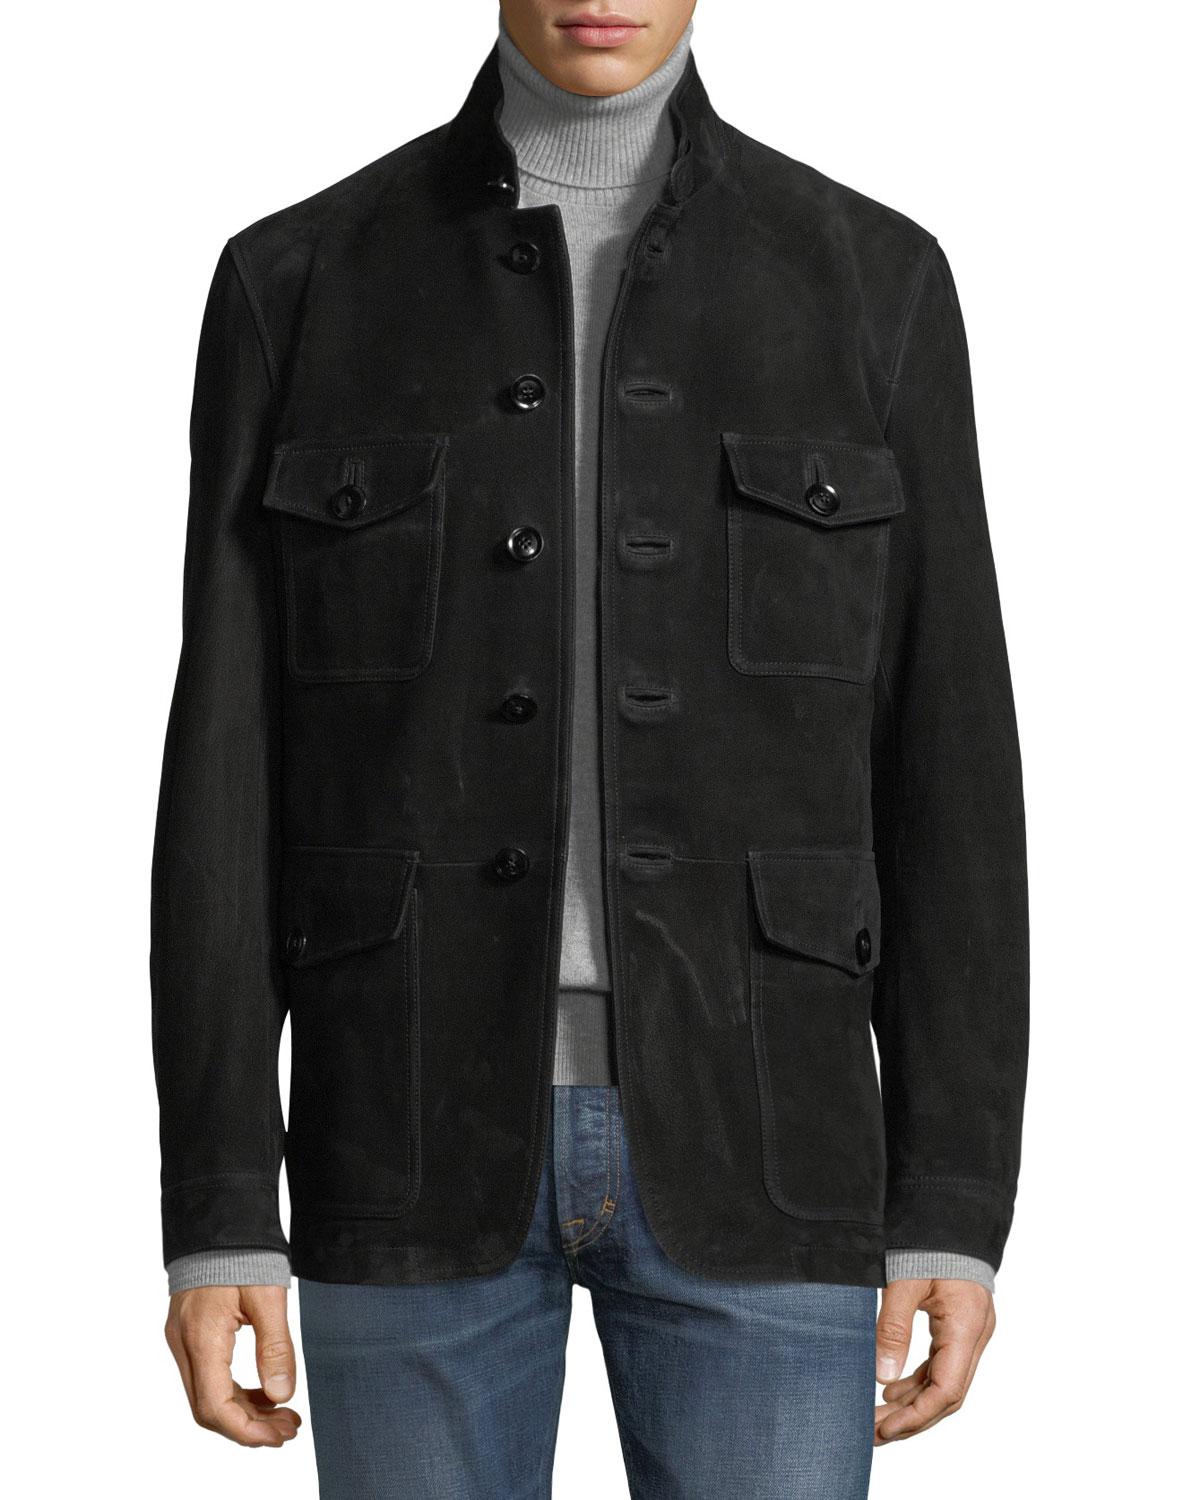 Tom Ford Nubuck Suede Four-pocket Safari Jacket in Black for Men - Lyst